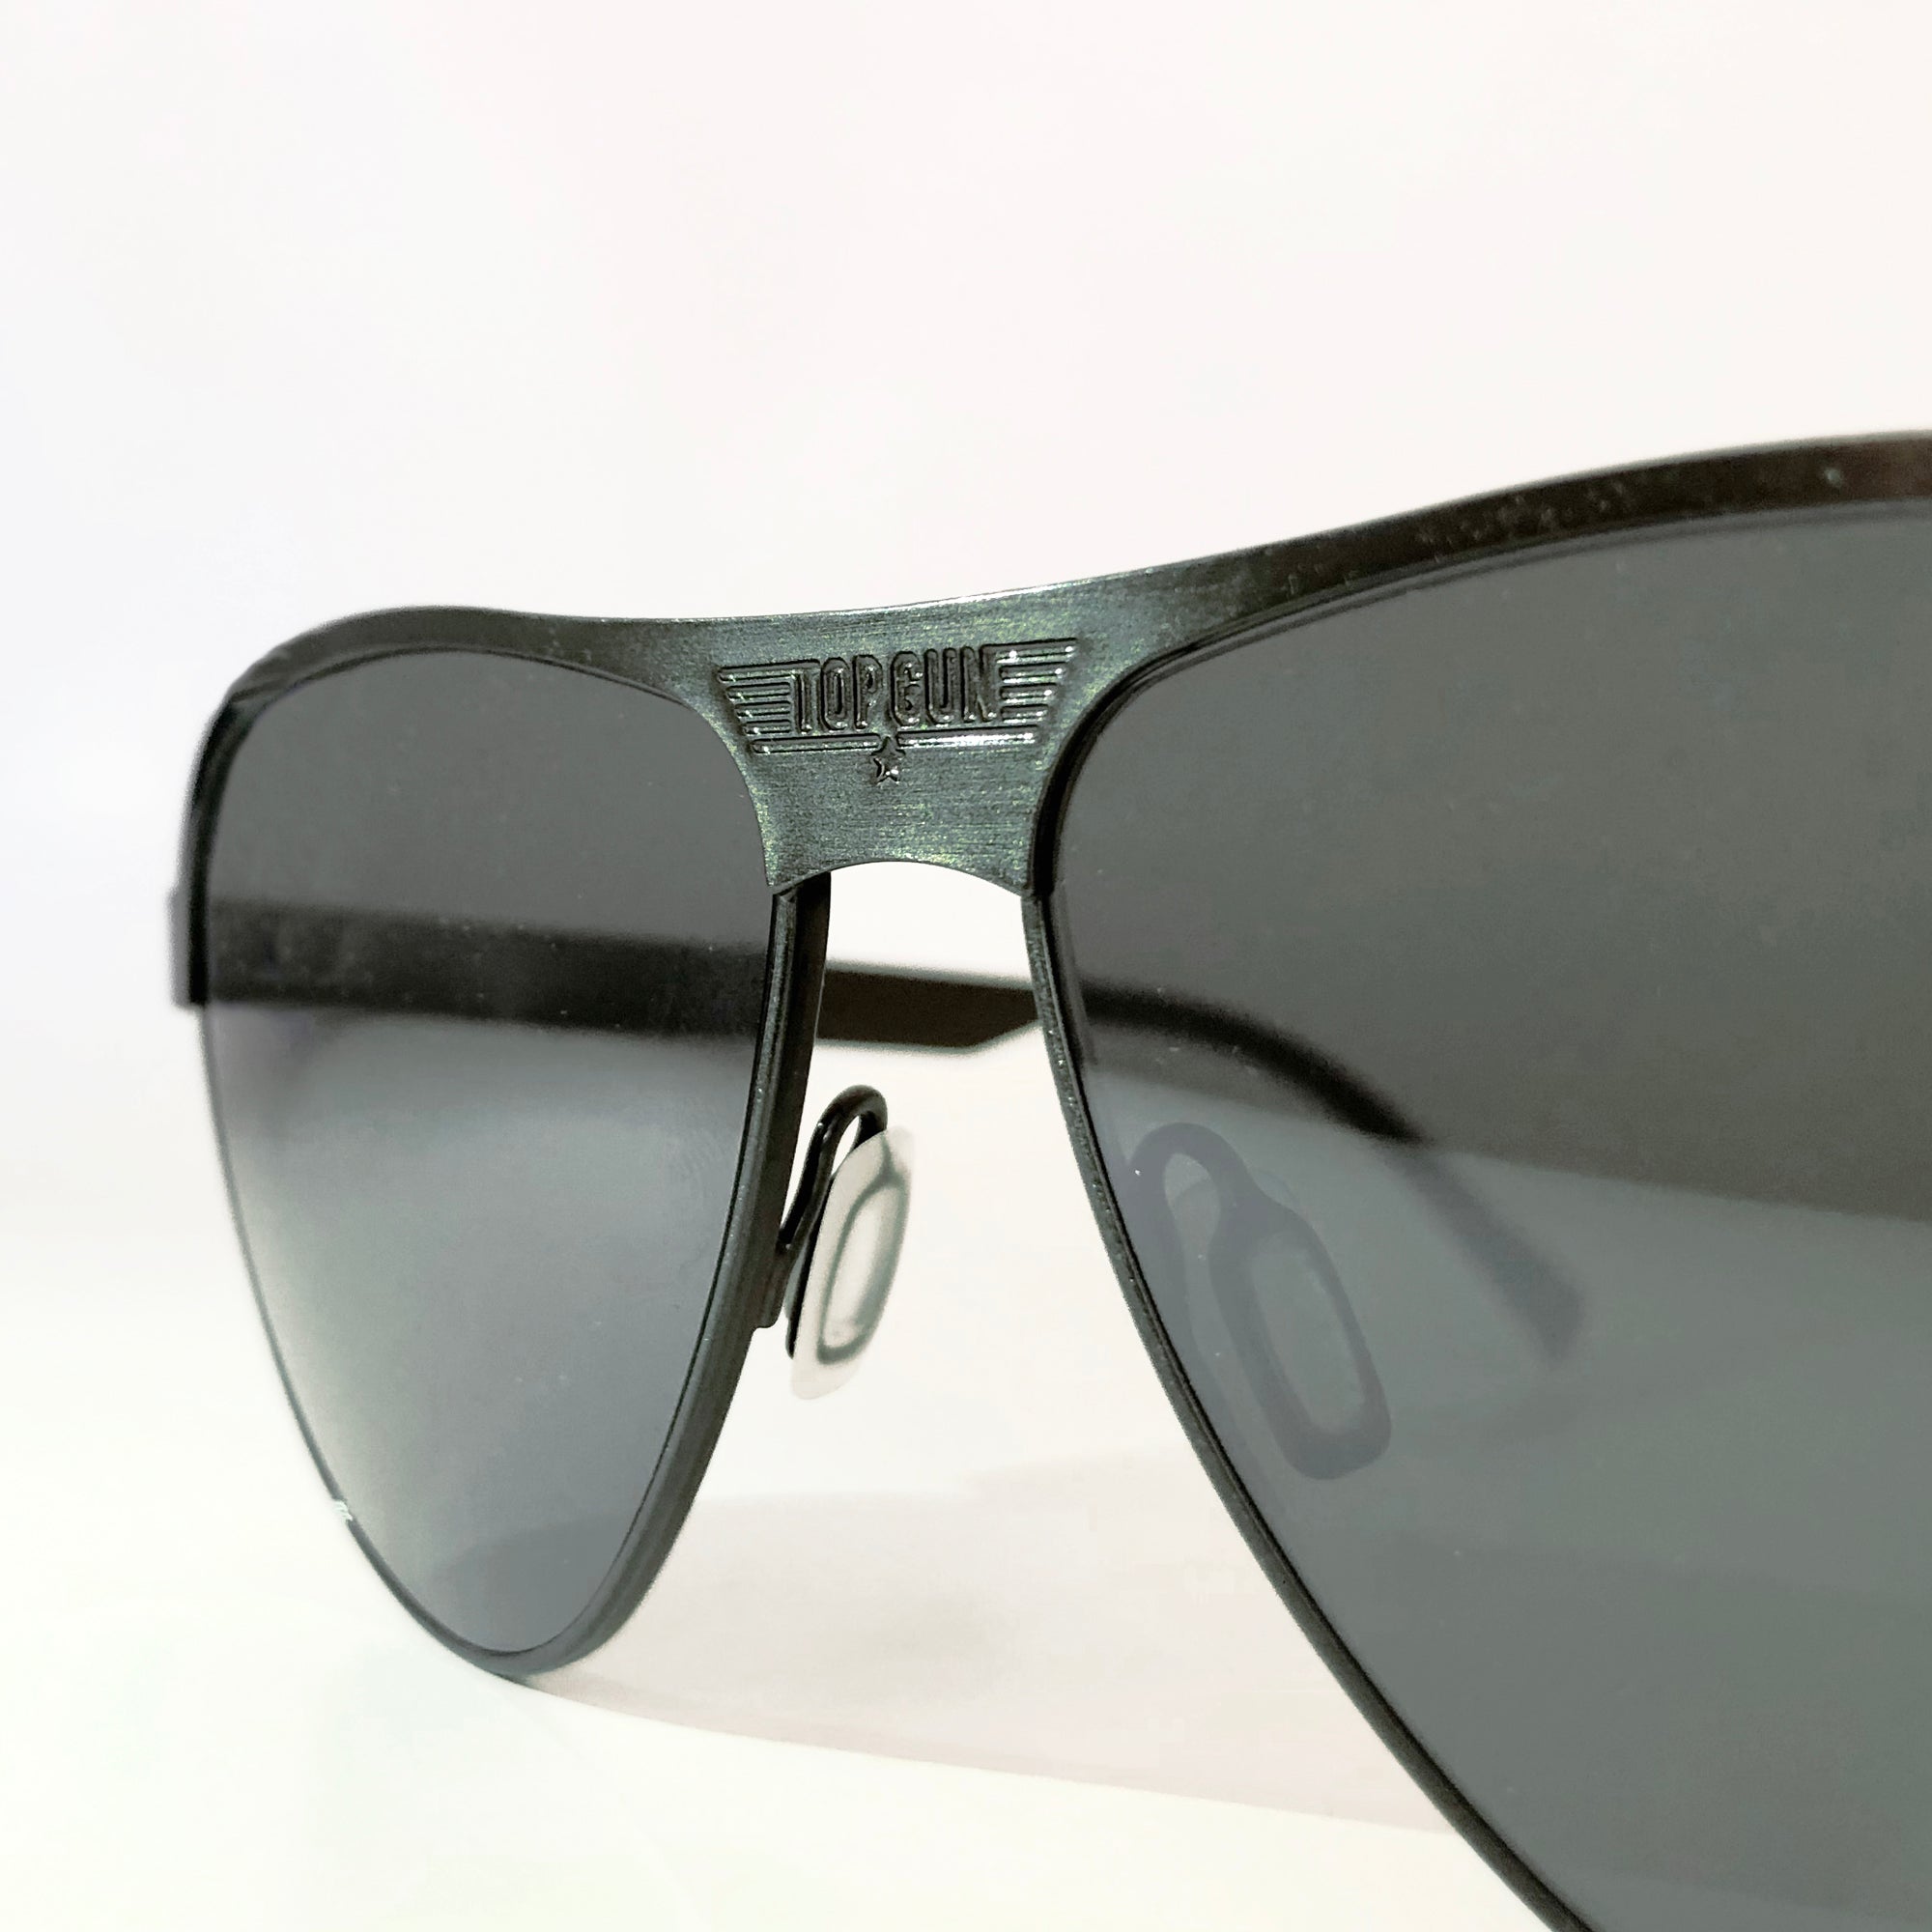 Maverick Aviator Sunglasses